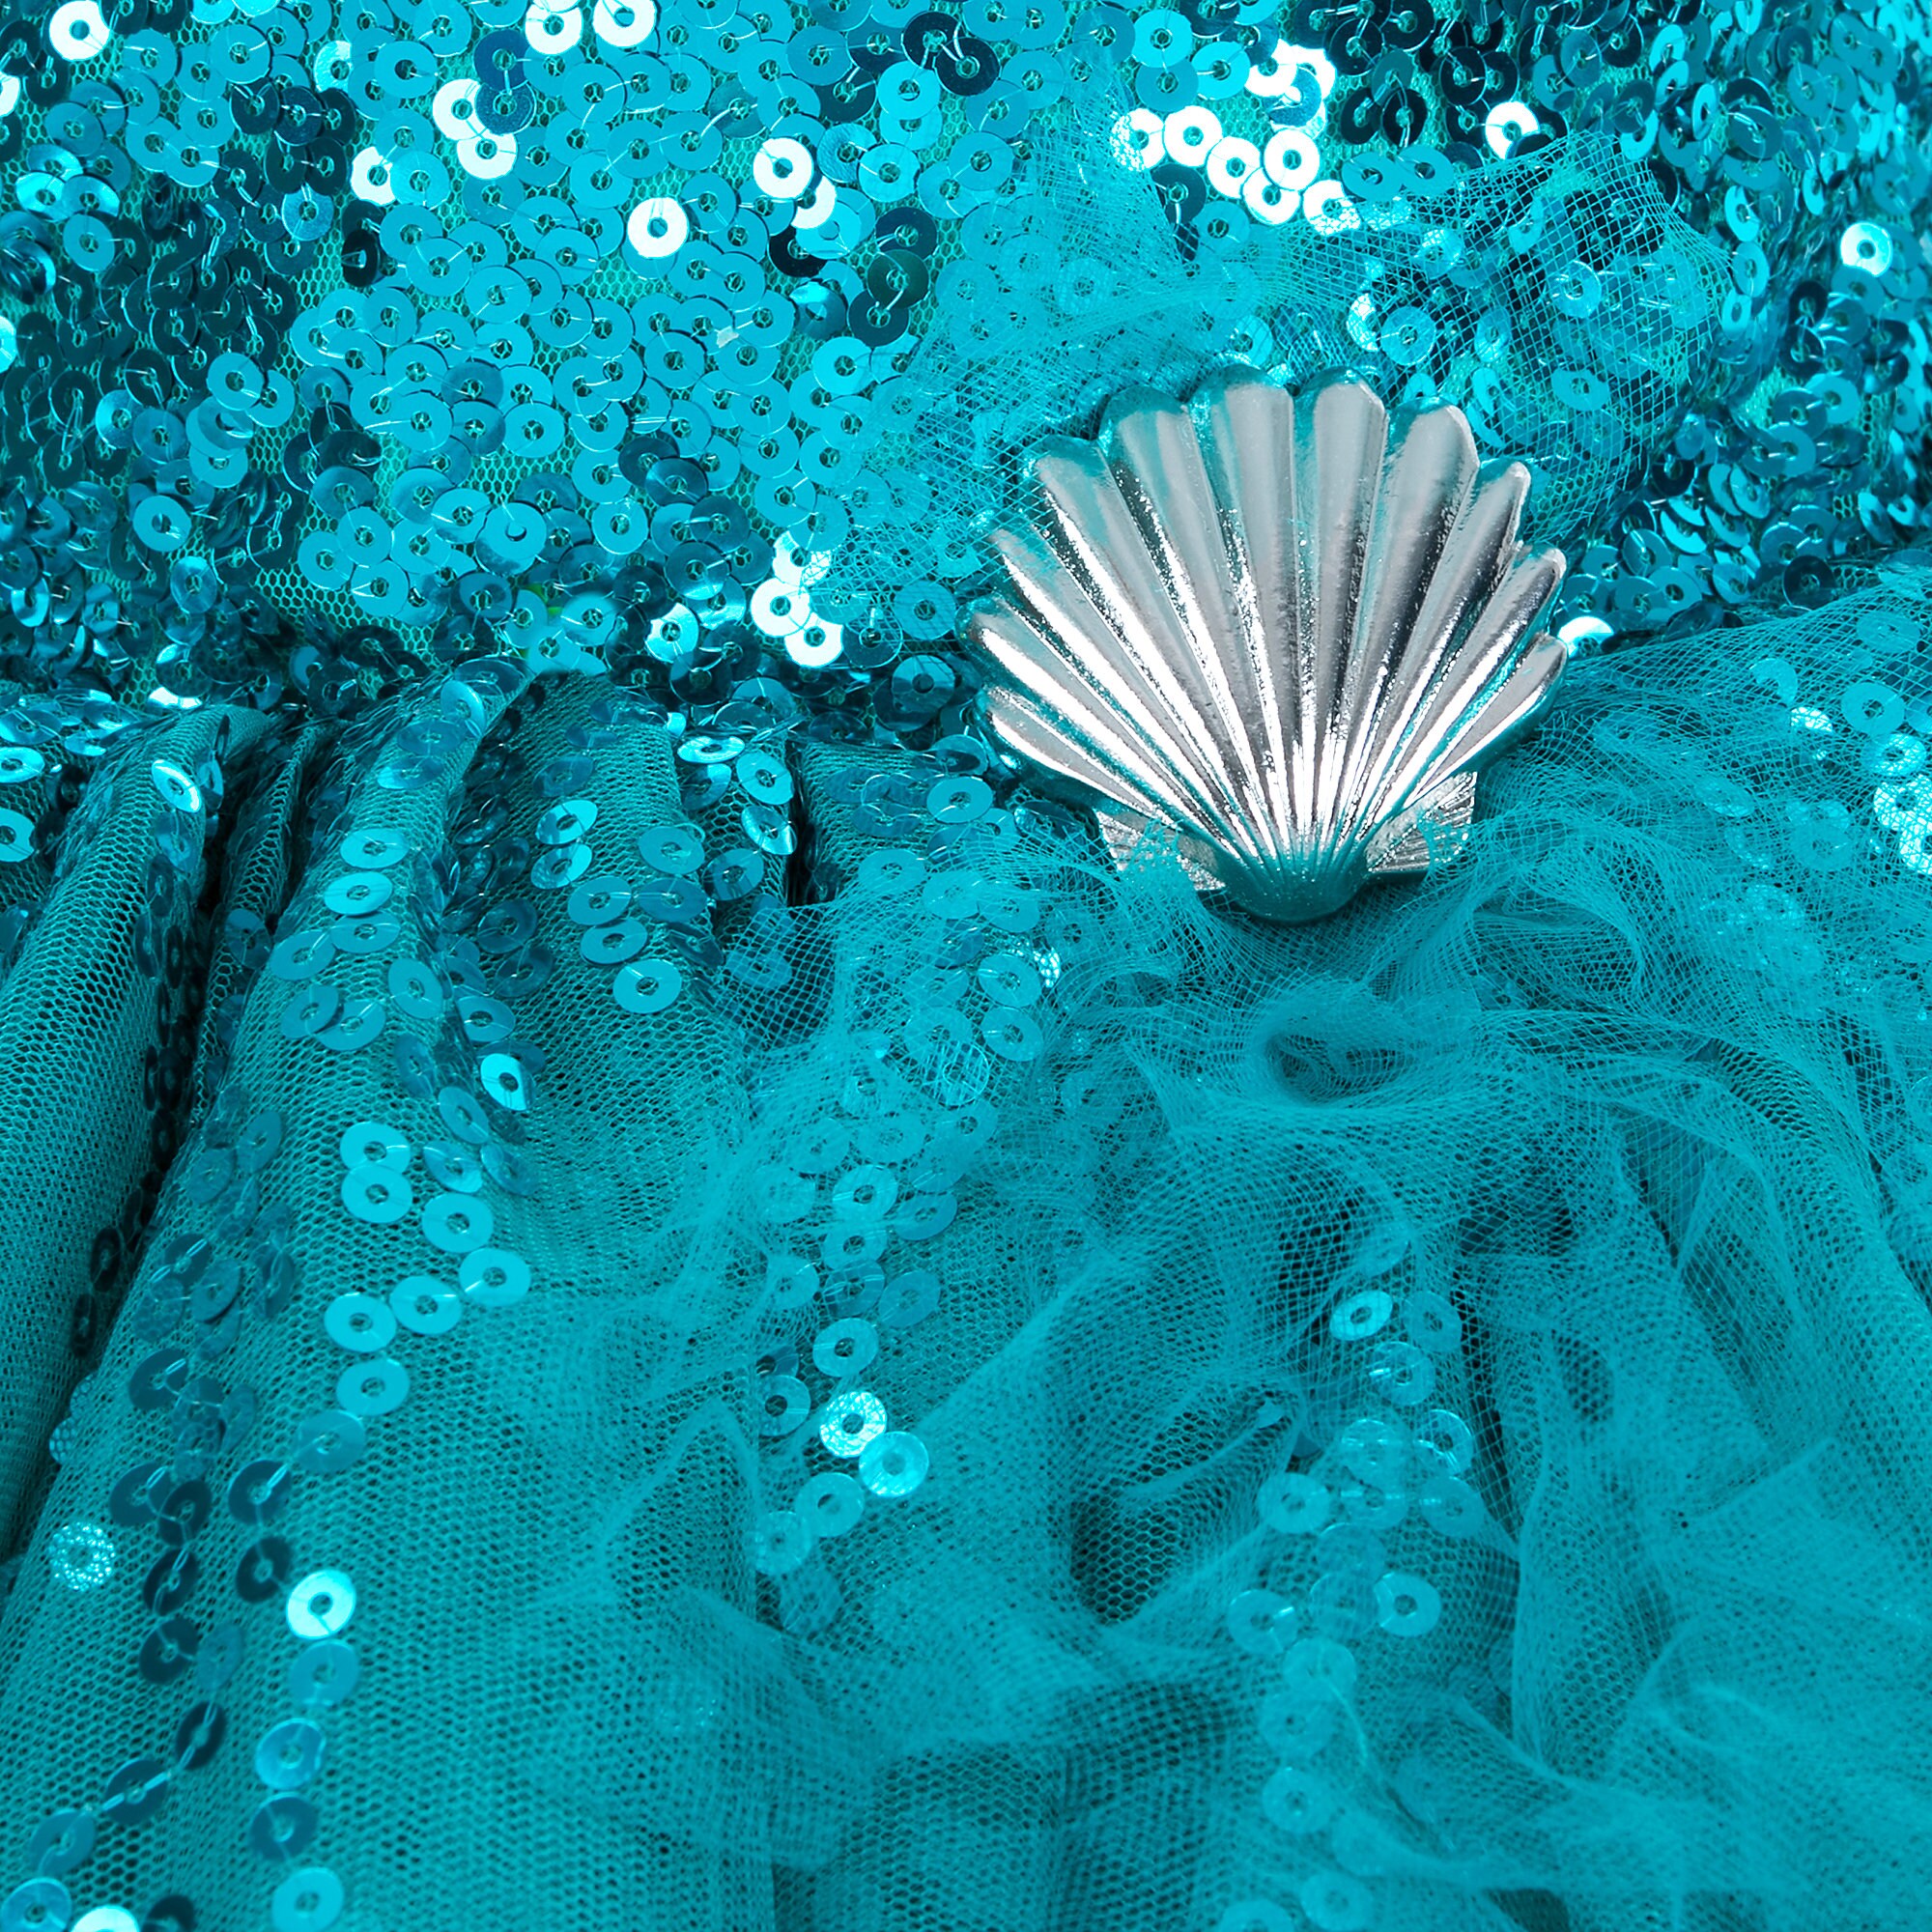 Ariel Fancy Dress for Girls - The Little Mermaid